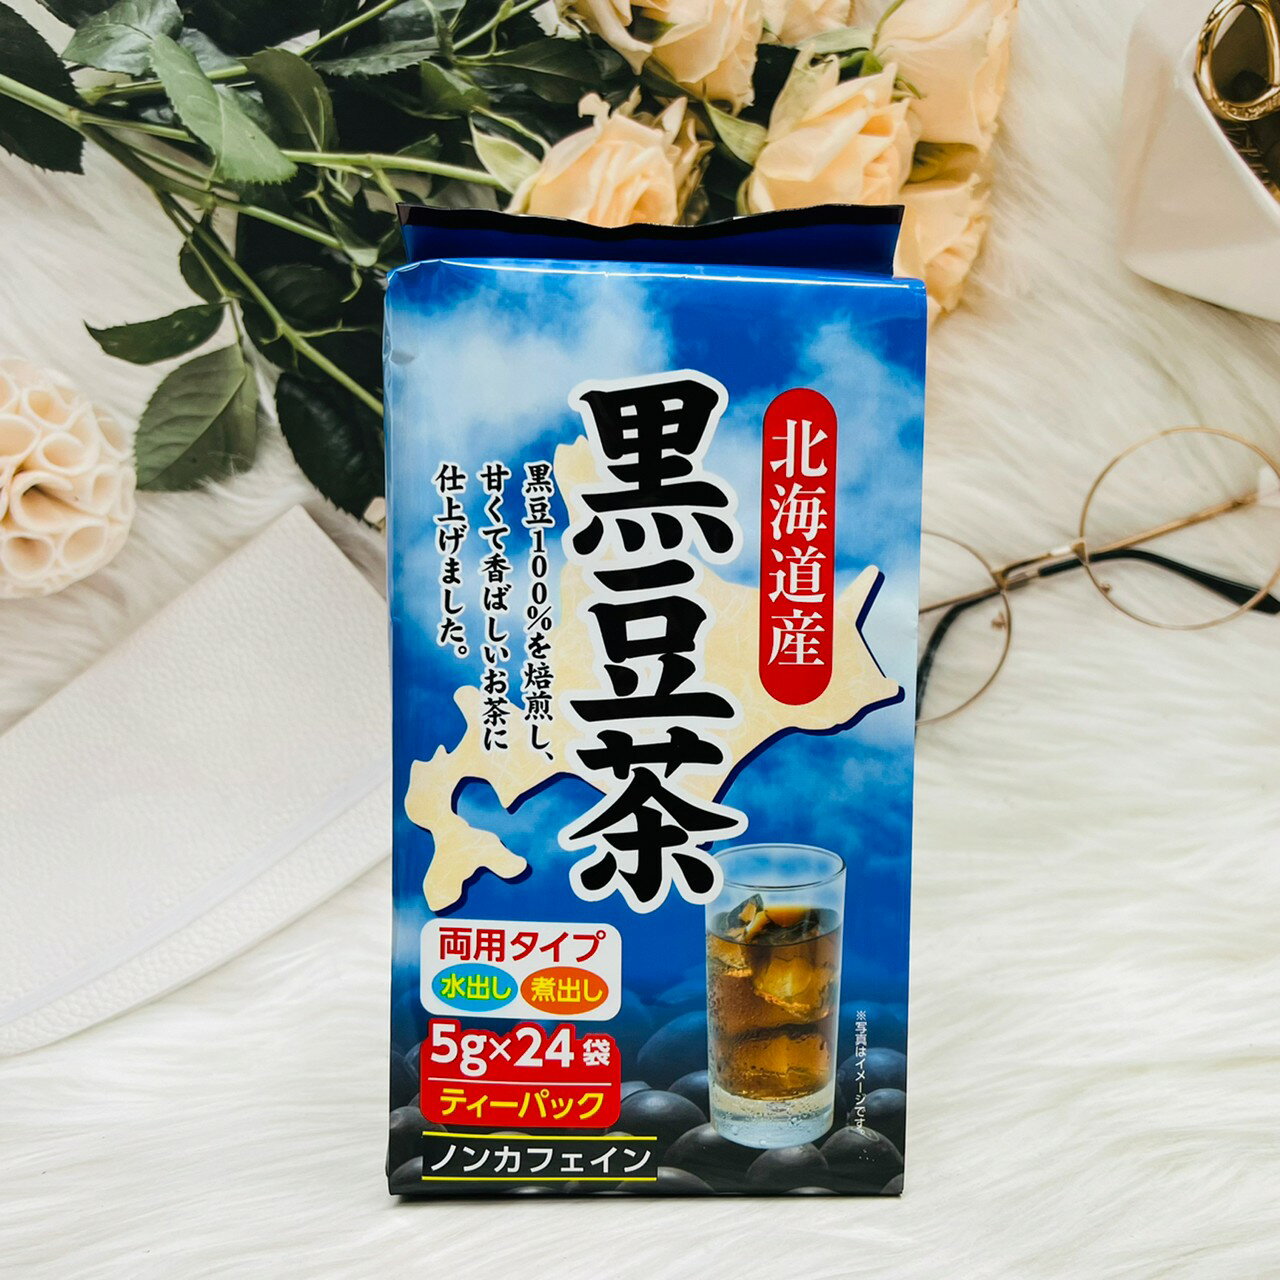 日本 黑豆焙煎 北海道產 黑豆茶 5g*24袋入 零咖啡因 冷泡熱泡都可以 日本黑豆茶｜全店$199免運